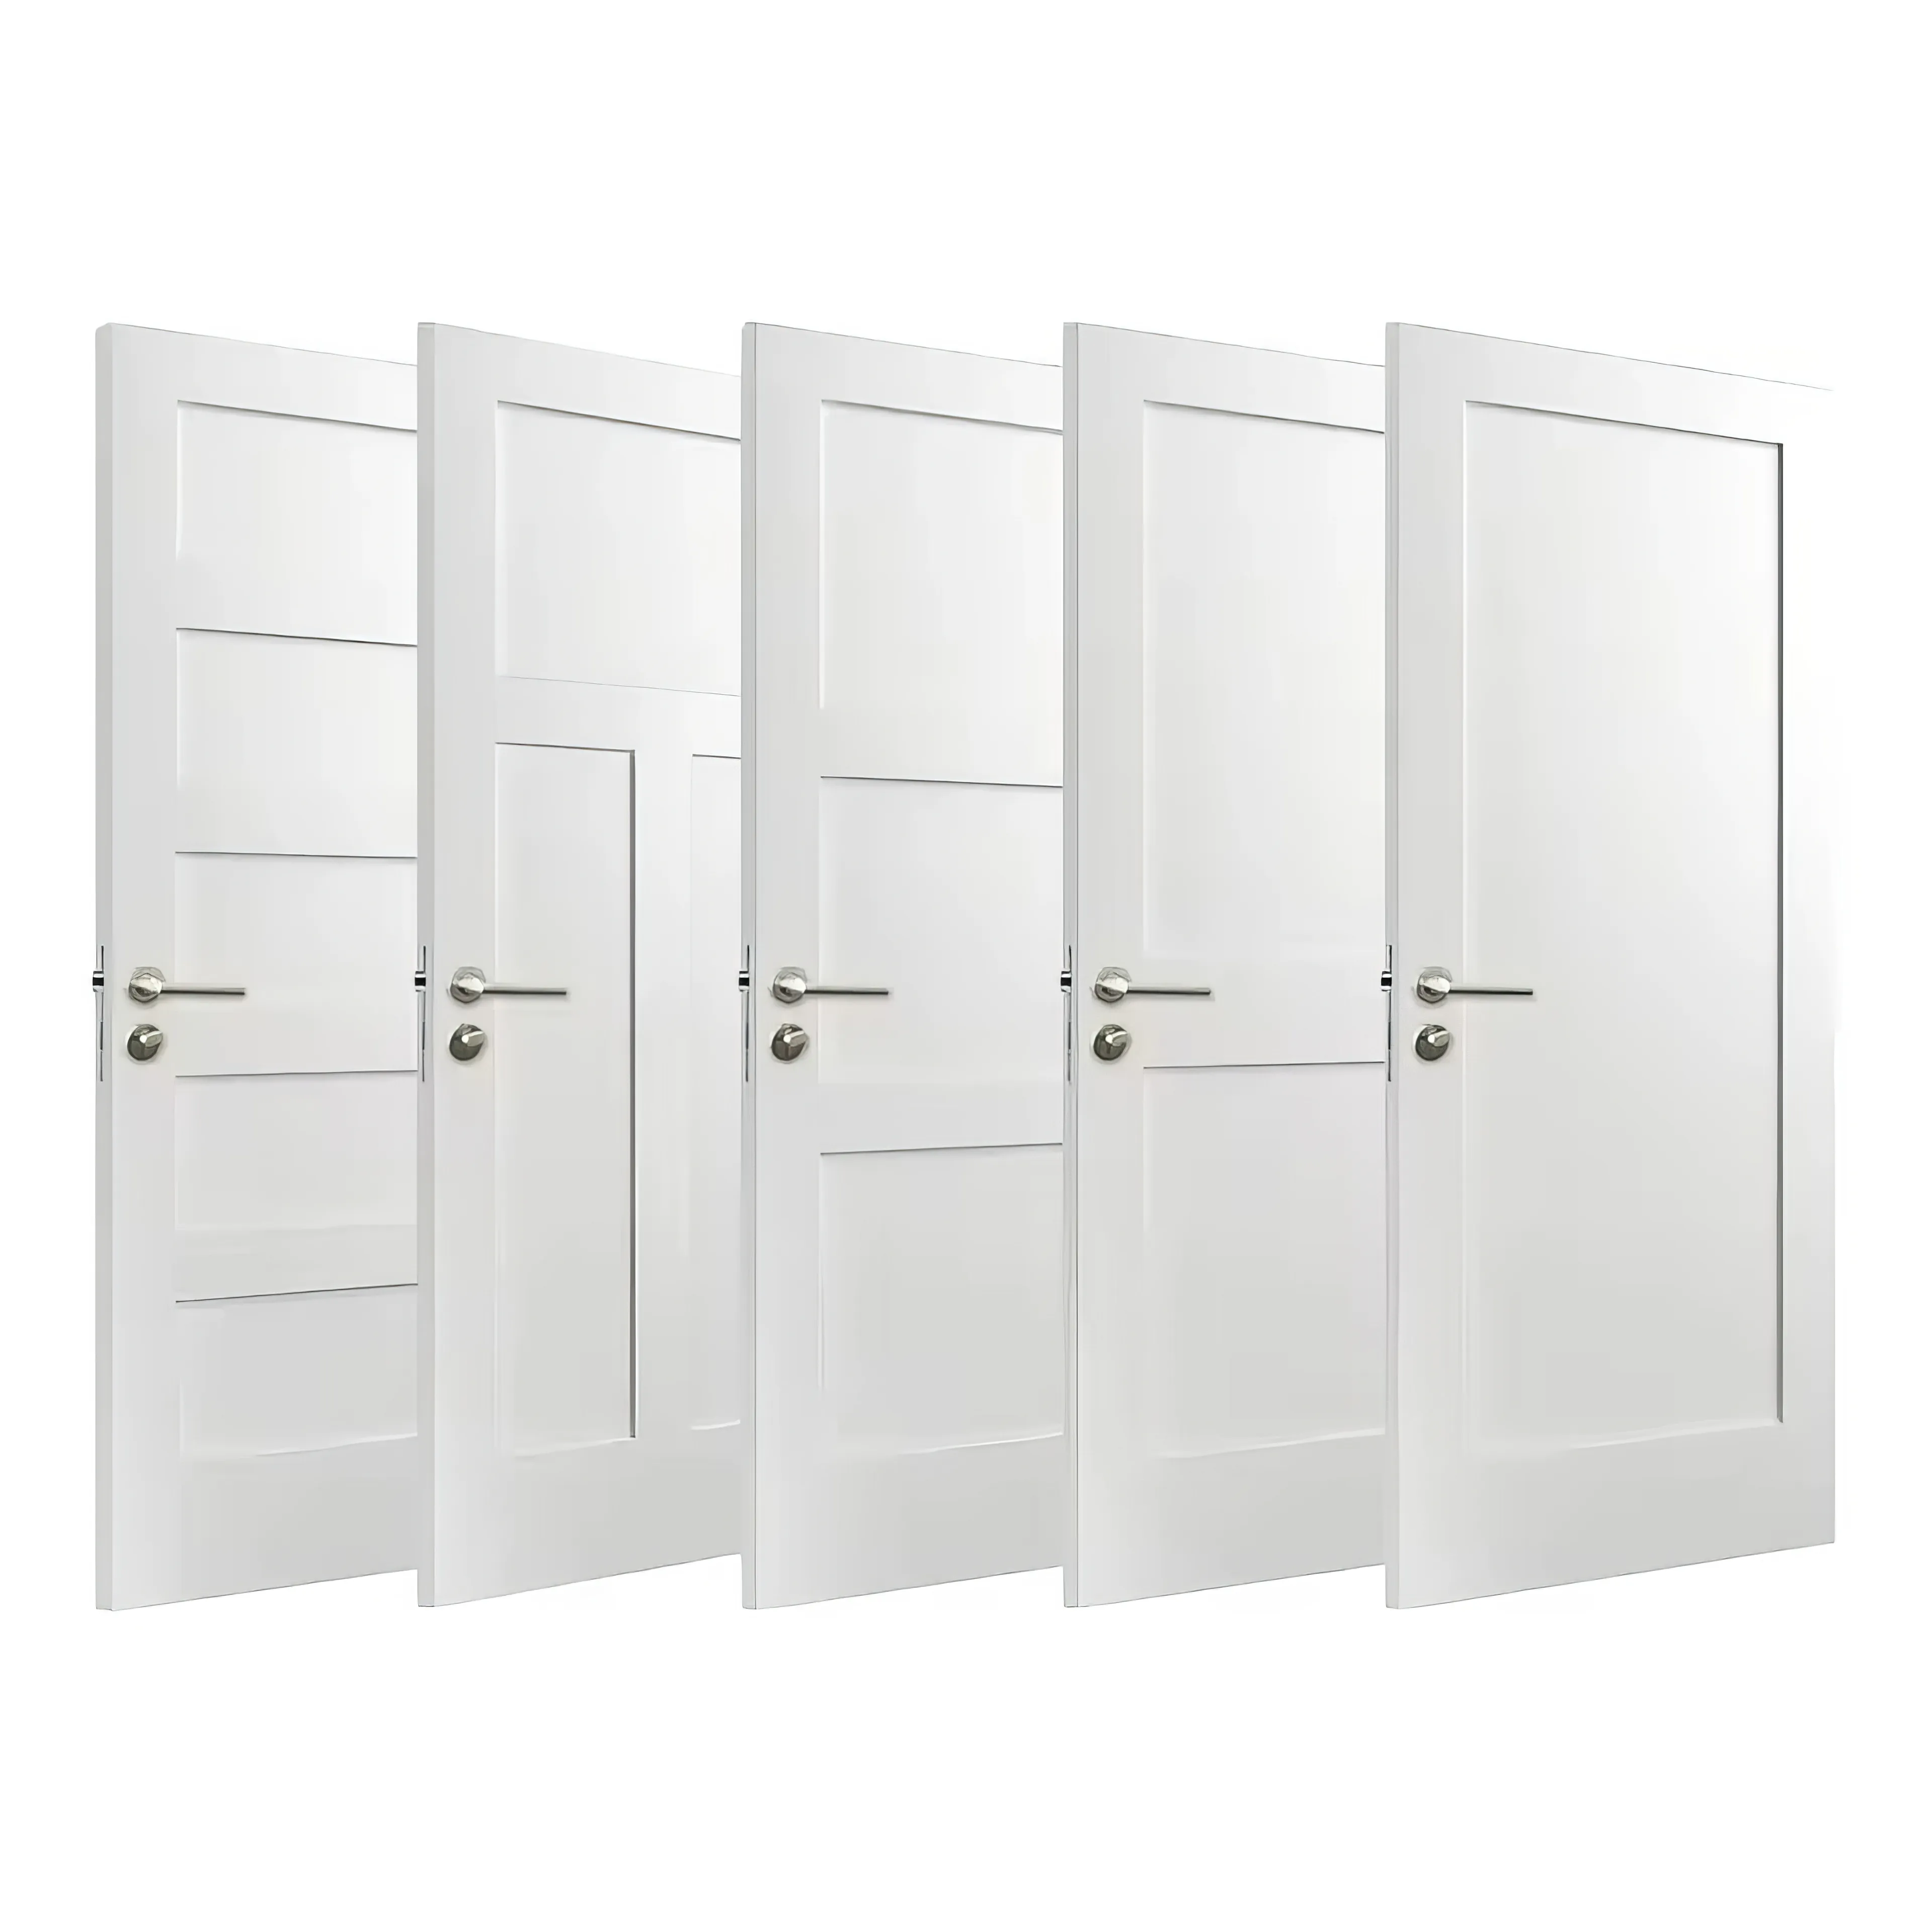 Camera di alta qualità Design moderno solido Prehung bianco completamente rifinito WPC interno legno porta legno MDF porte interne